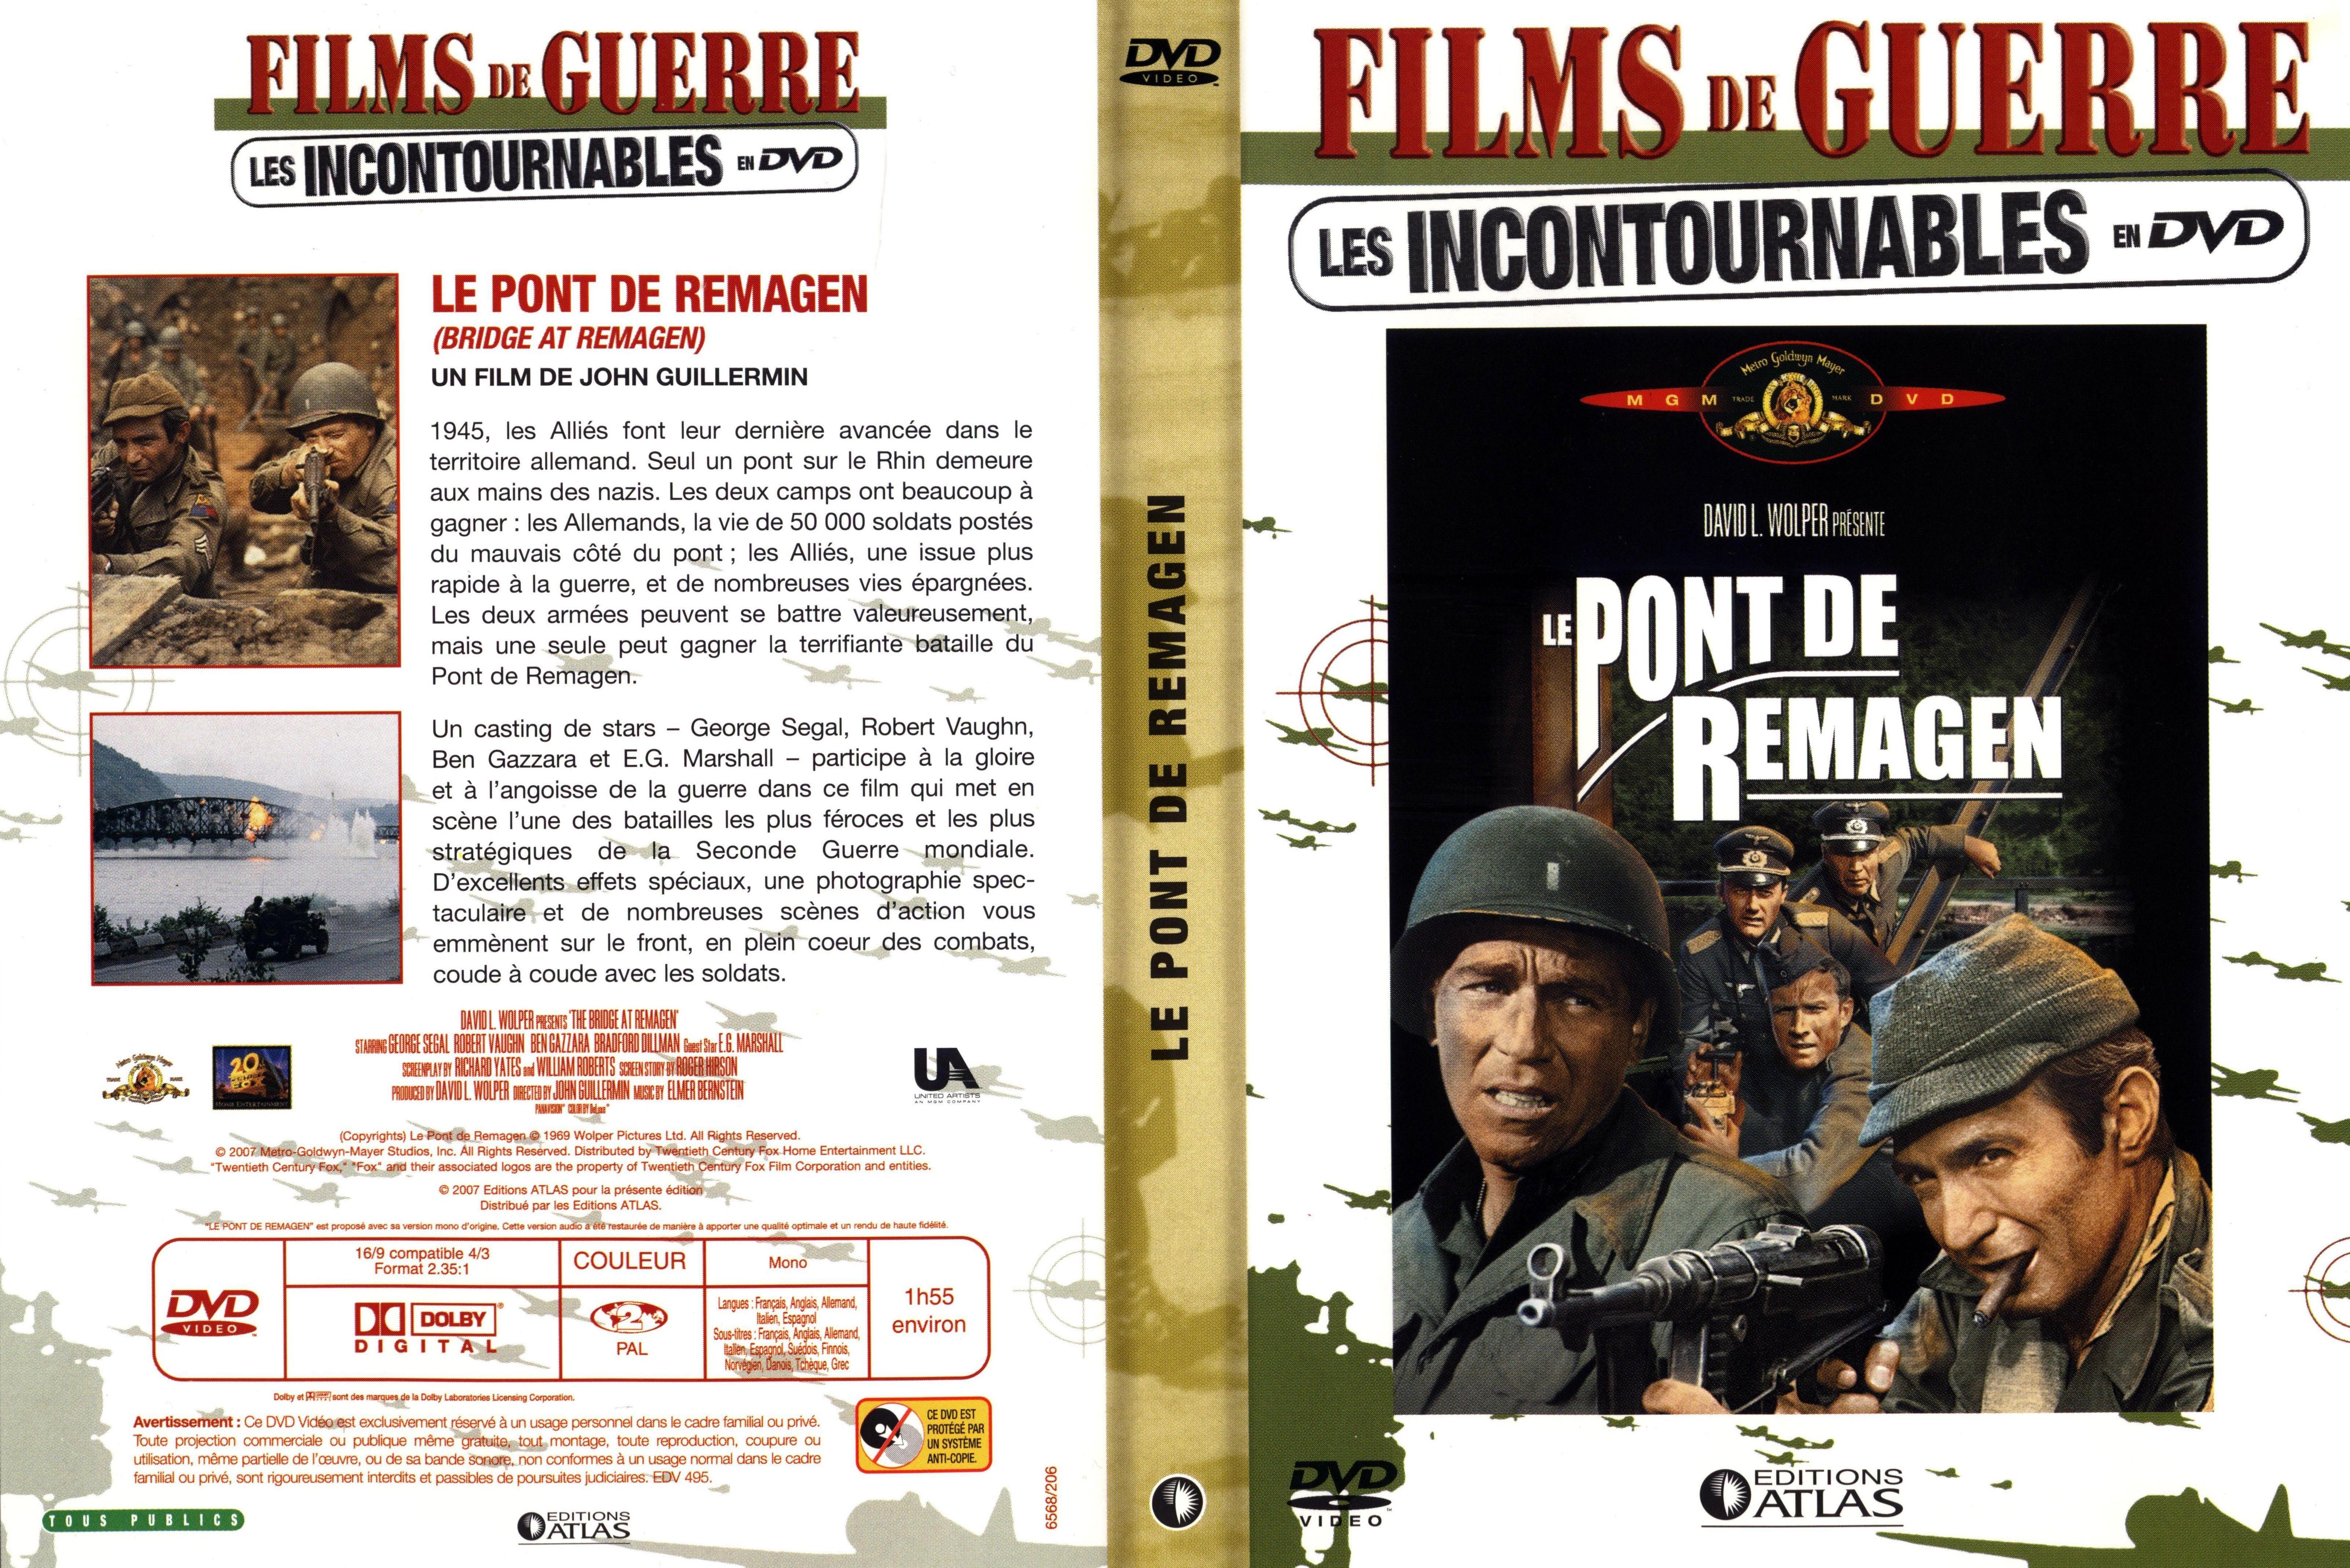 Jaquette DVD Le pont de Remagen v2